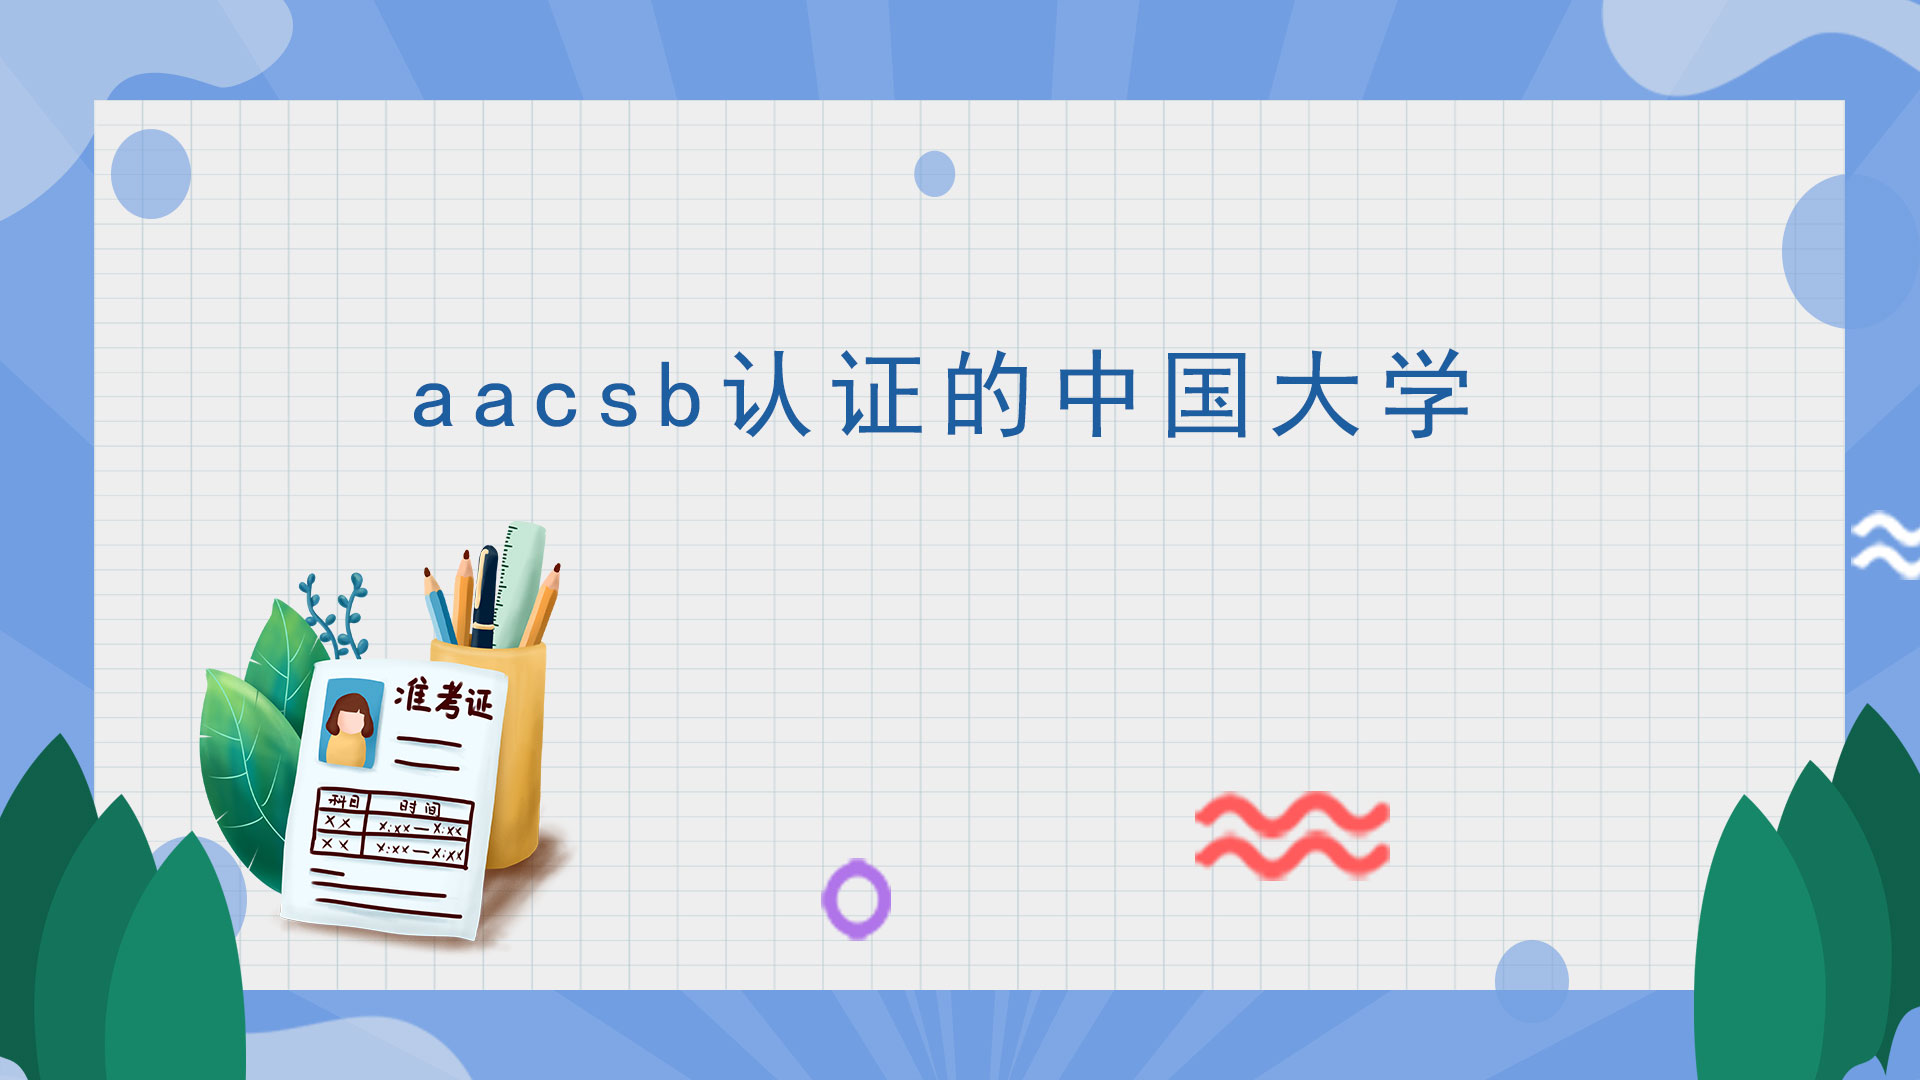 aacsb认证的中国大学